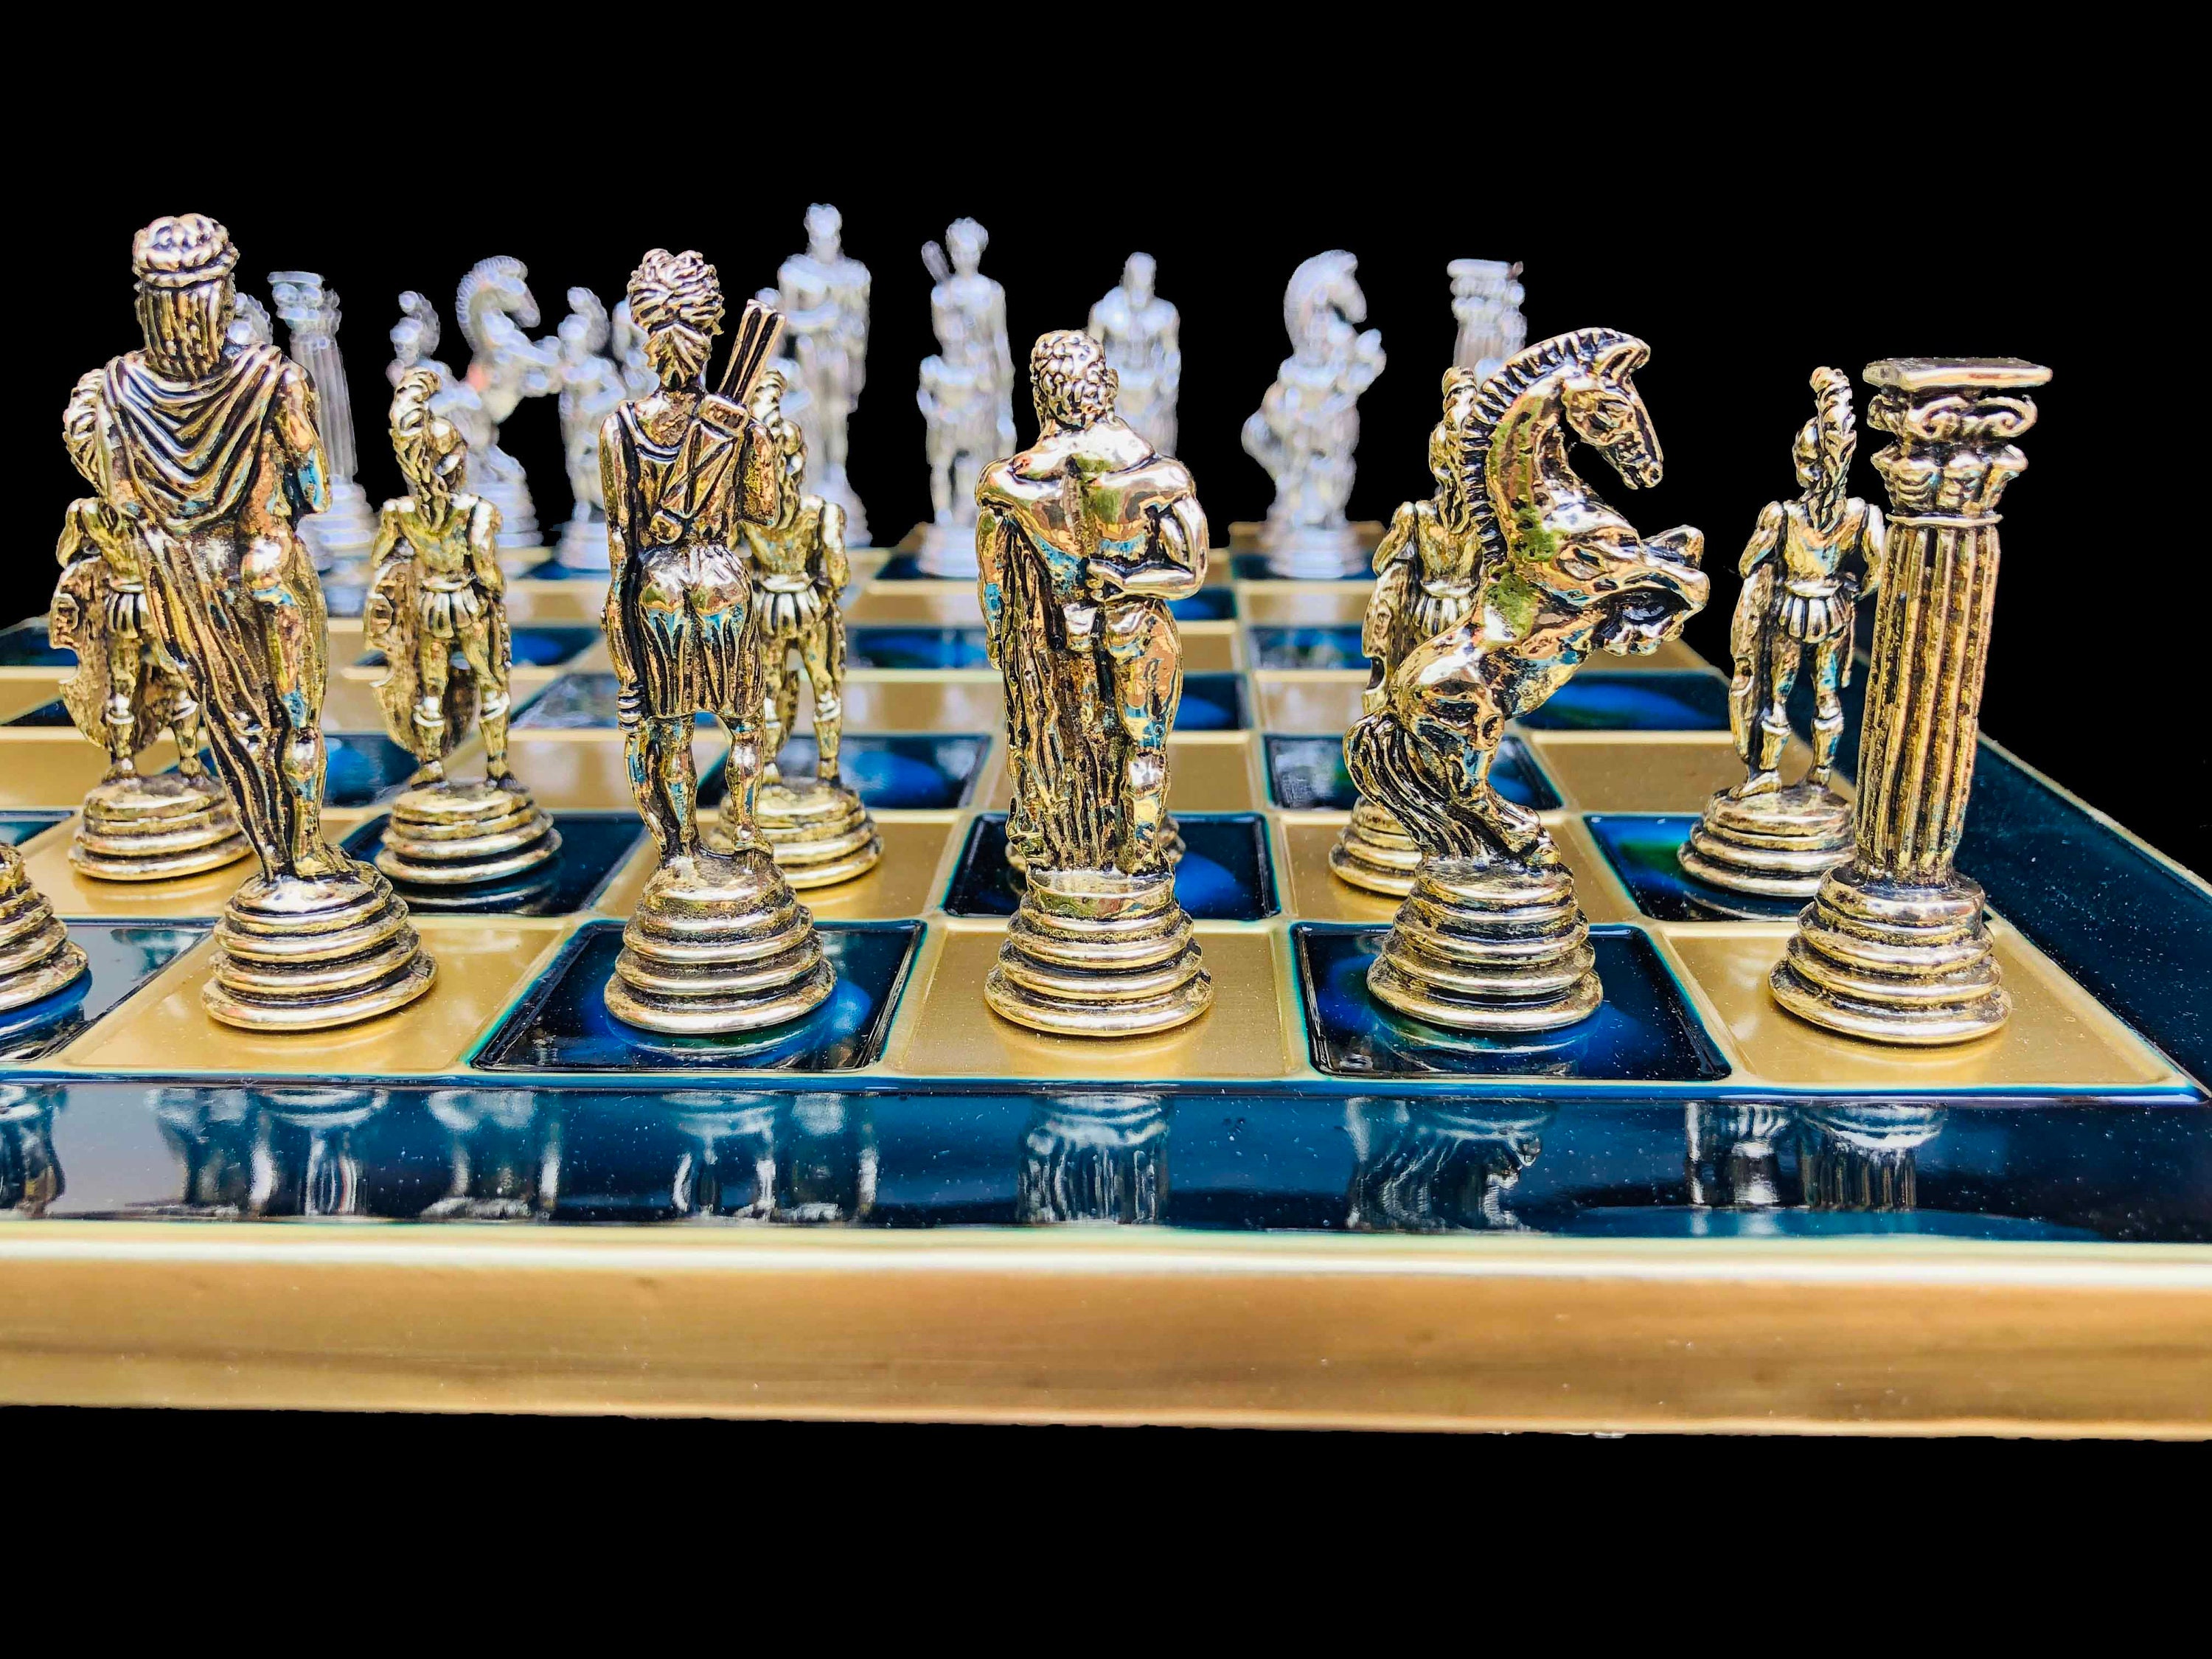 Jogo de xadrez medieval com tabuleiro em Promoção na Americanas